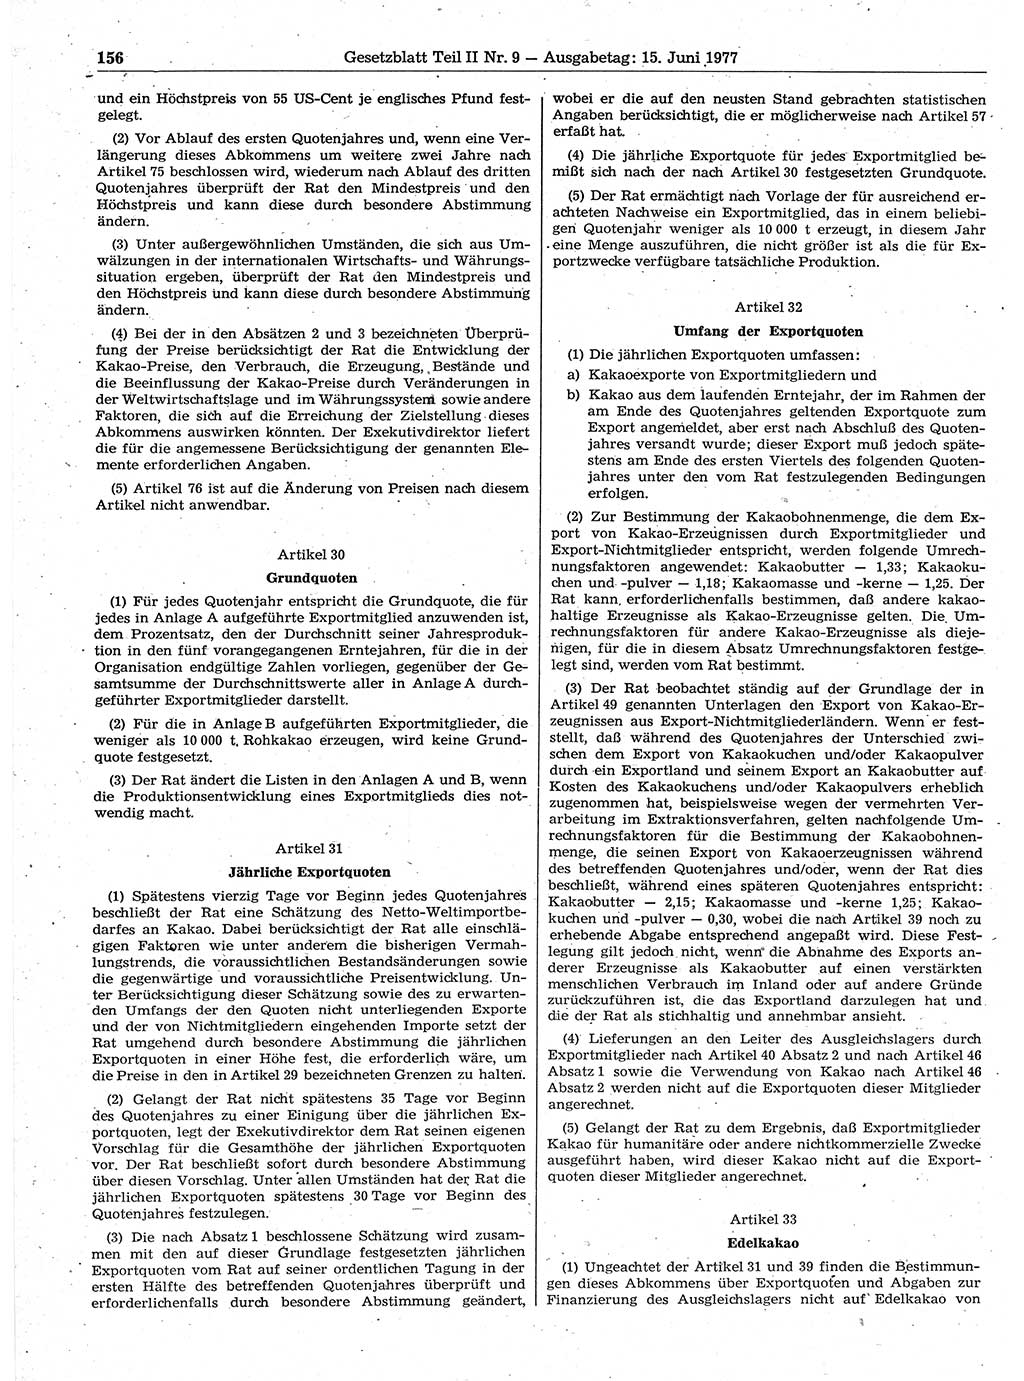 Gesetzblatt (GBl.) der Deutschen Demokratischen Republik (DDR) Teil ⅠⅠ 1977, Seite 156 (GBl. DDR ⅠⅠ 1977, S. 156)